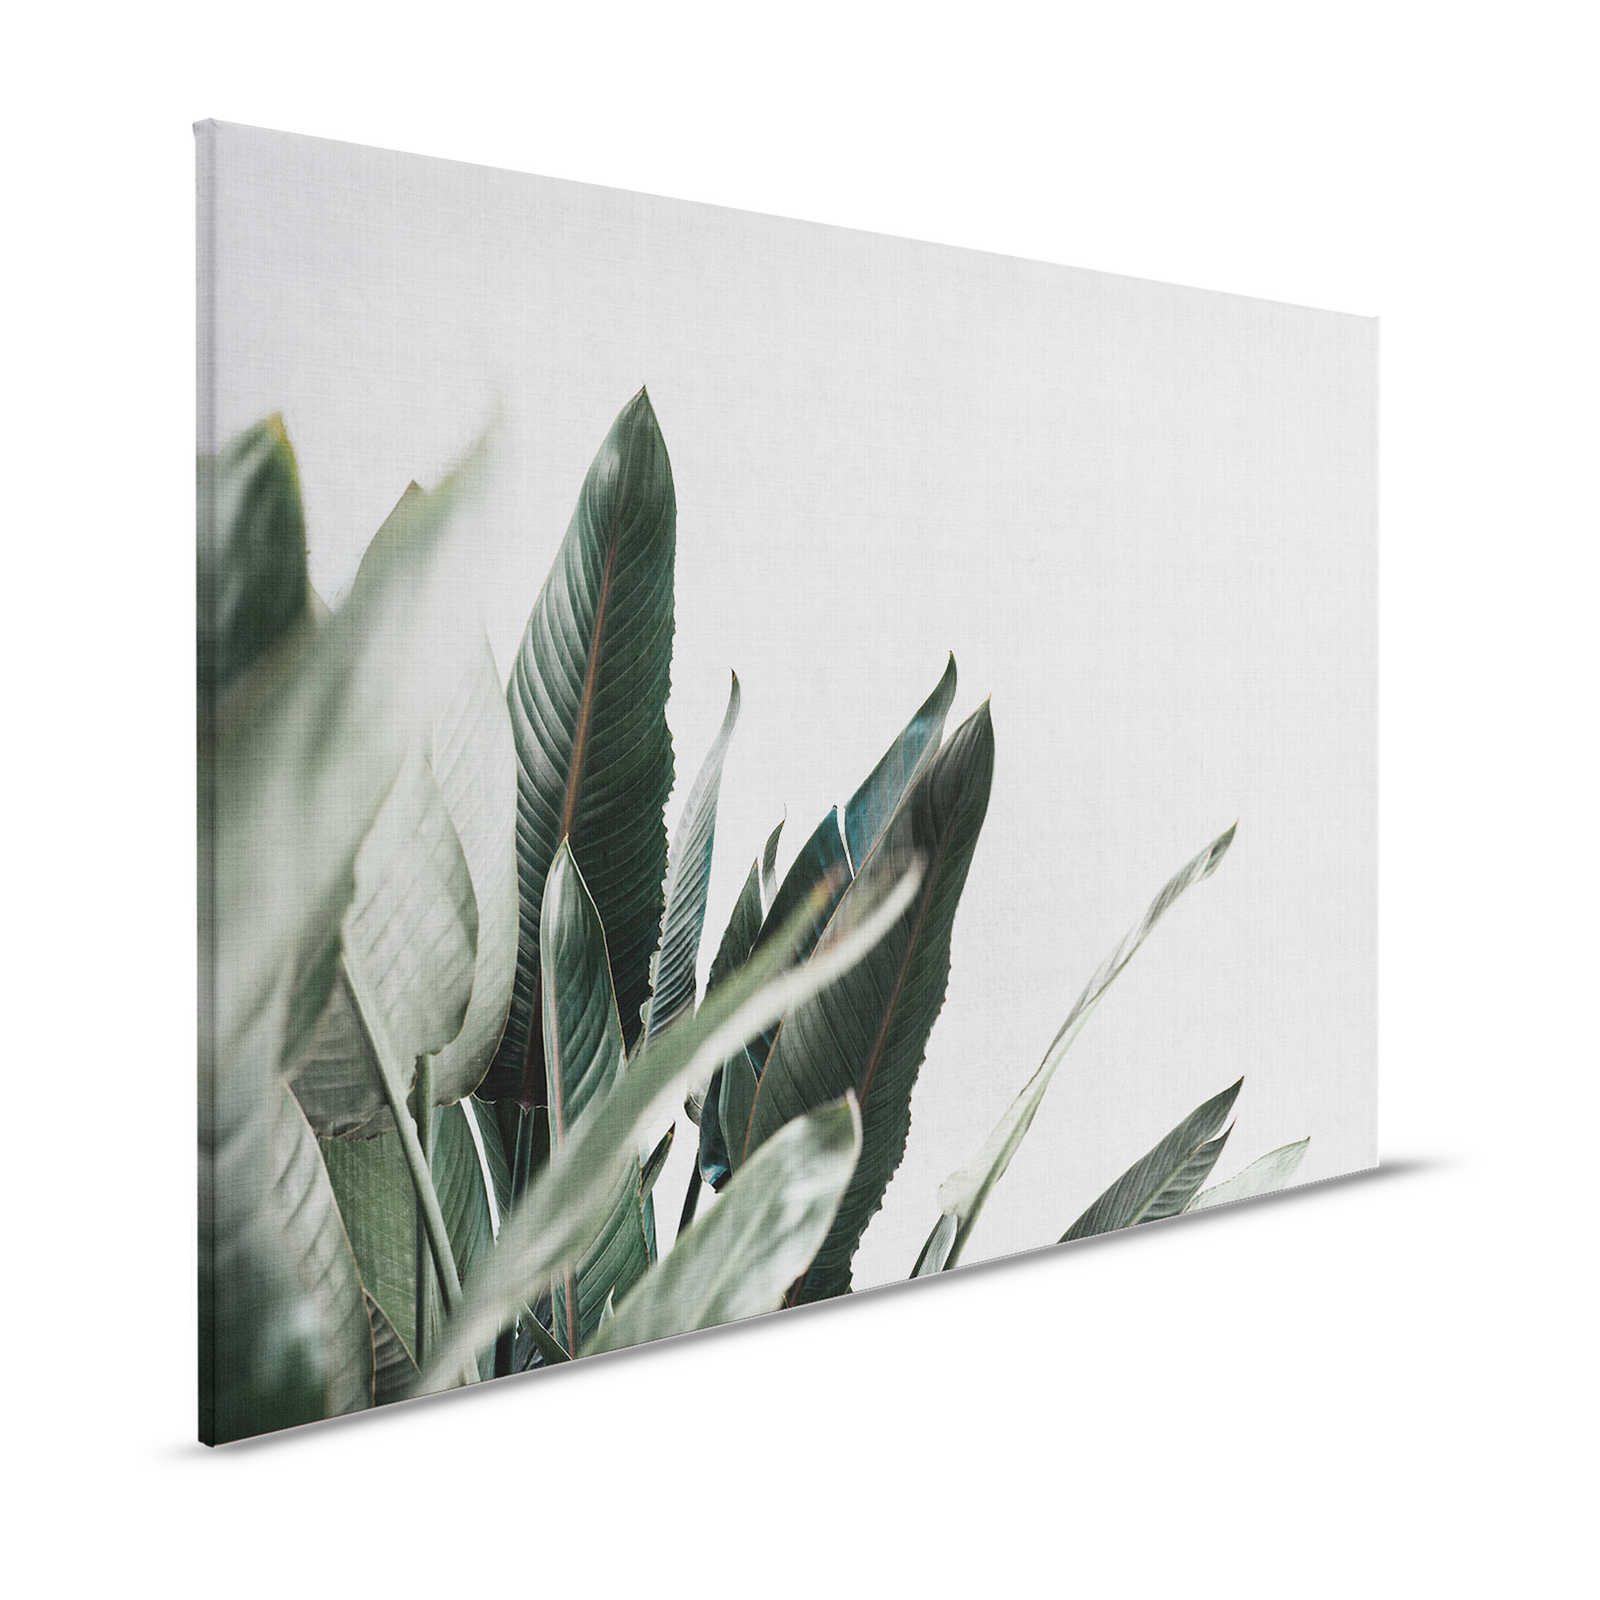 Jungla urbana 1 - Cuadro en lienzo con hojas de palmera en aspecto de lino natural - 1,20 m x 0,80 m
